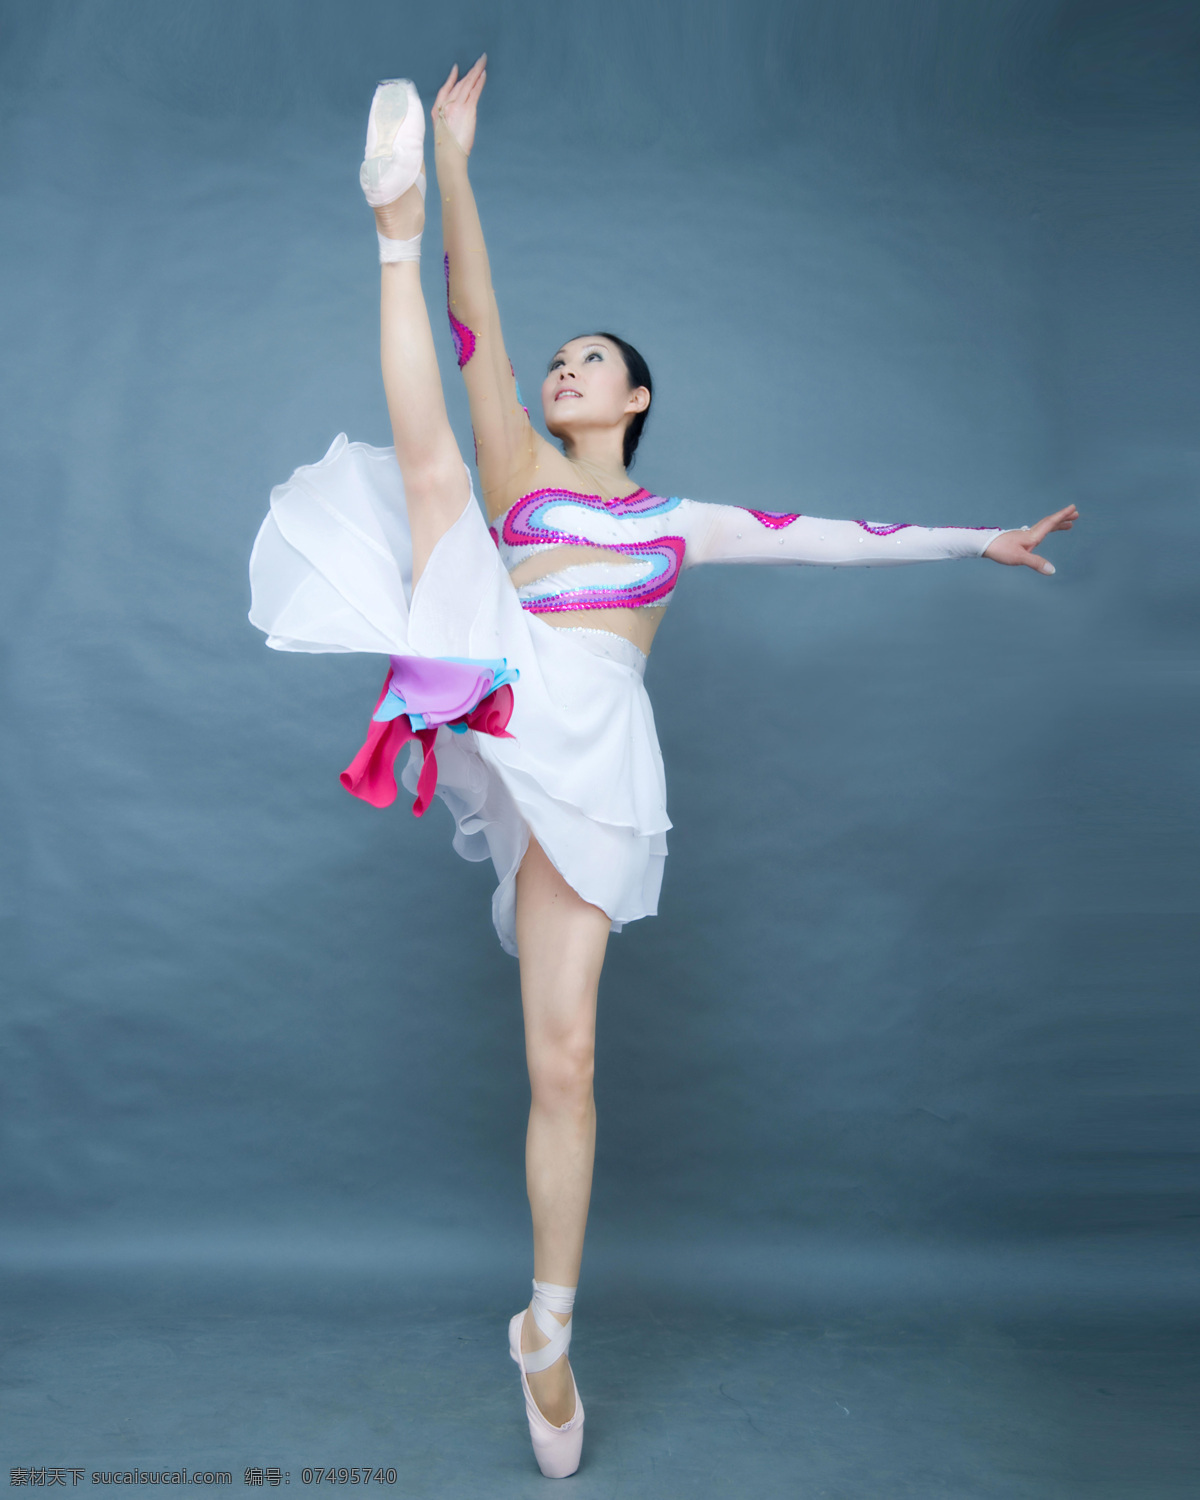 芭蕾舞 芭蕾舞蹈 芭蕾 美腿 舞蹈 脚尖 优美舞姿 美女 轻盈 舞姿 舞蹈音乐 文化艺术